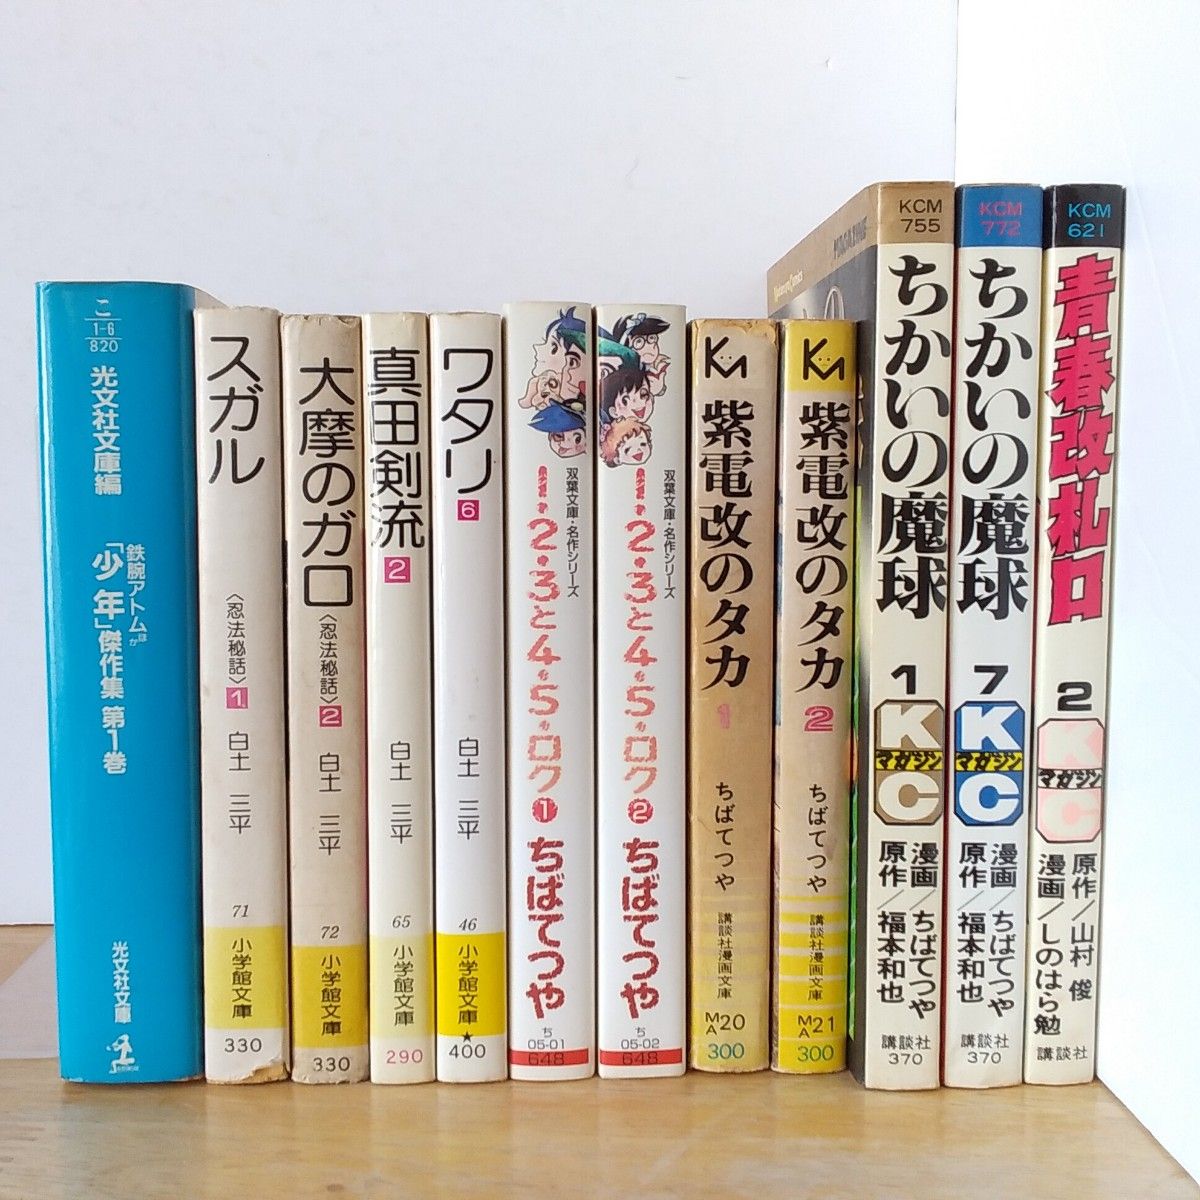 昭和の漫画、ちばてつや、 白土三平など、12冊セット